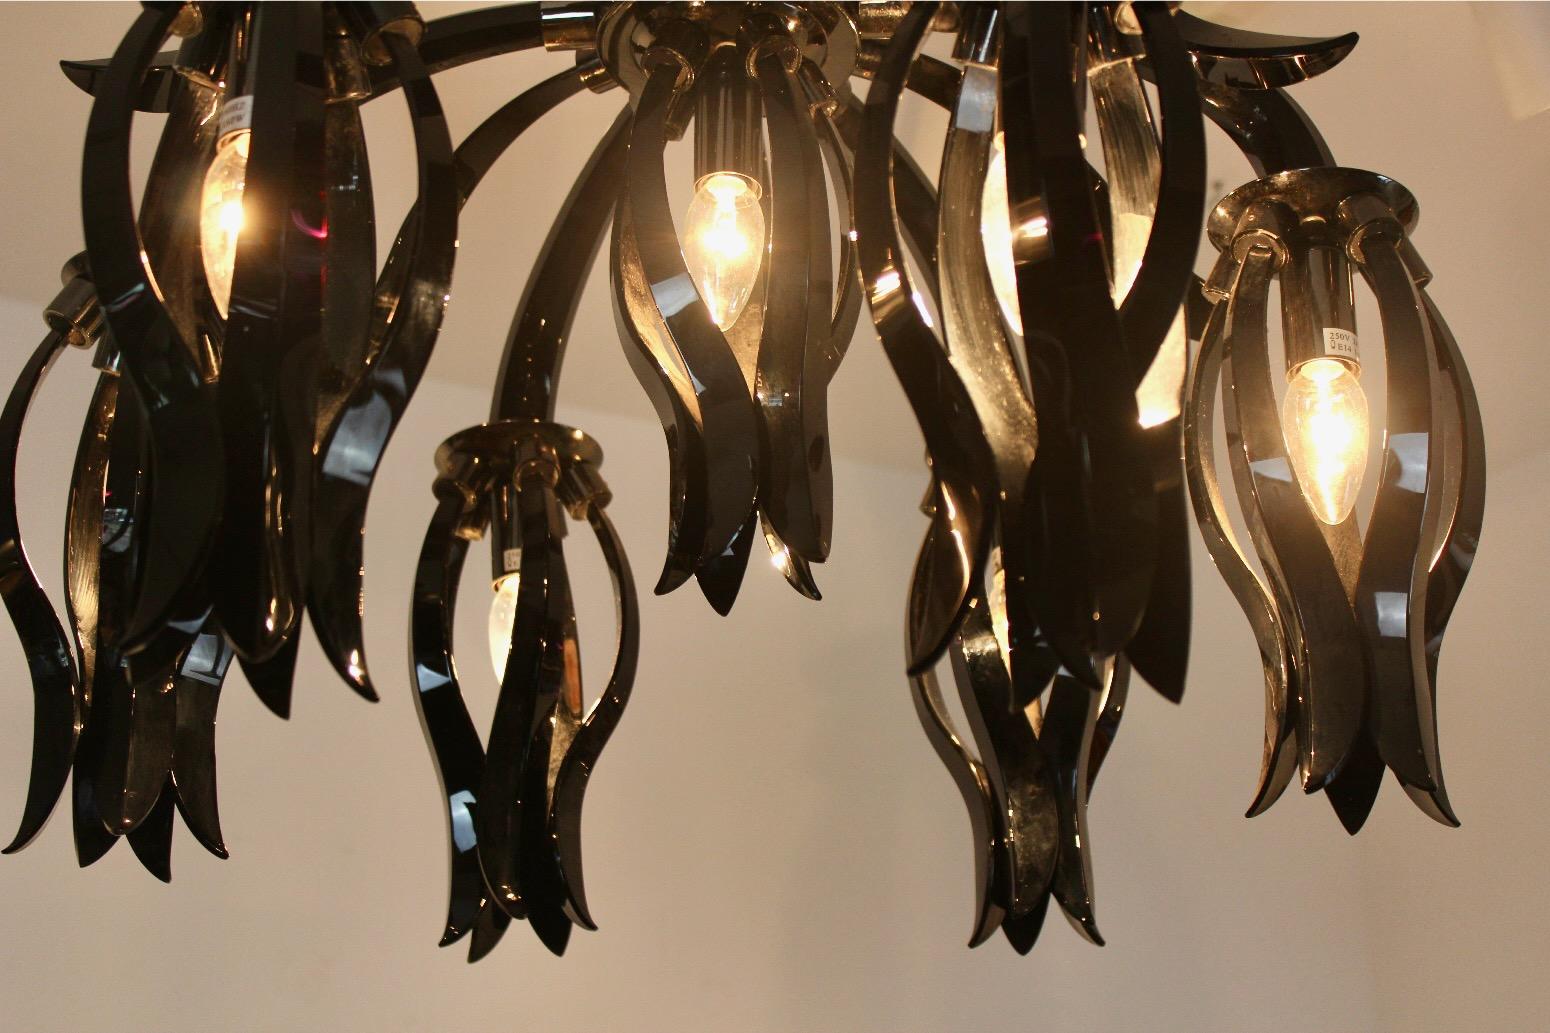 Der Black Glass Chandelier von Barovier & Toso ist ein atemberaubendes Stück Beleuchtungskunst, das die venezianische Glasmacherkunst der Marke Barovier & Toso unter Beweis stellt. Der Kronleuchter besteht aus einer Kaskade von schwarzen